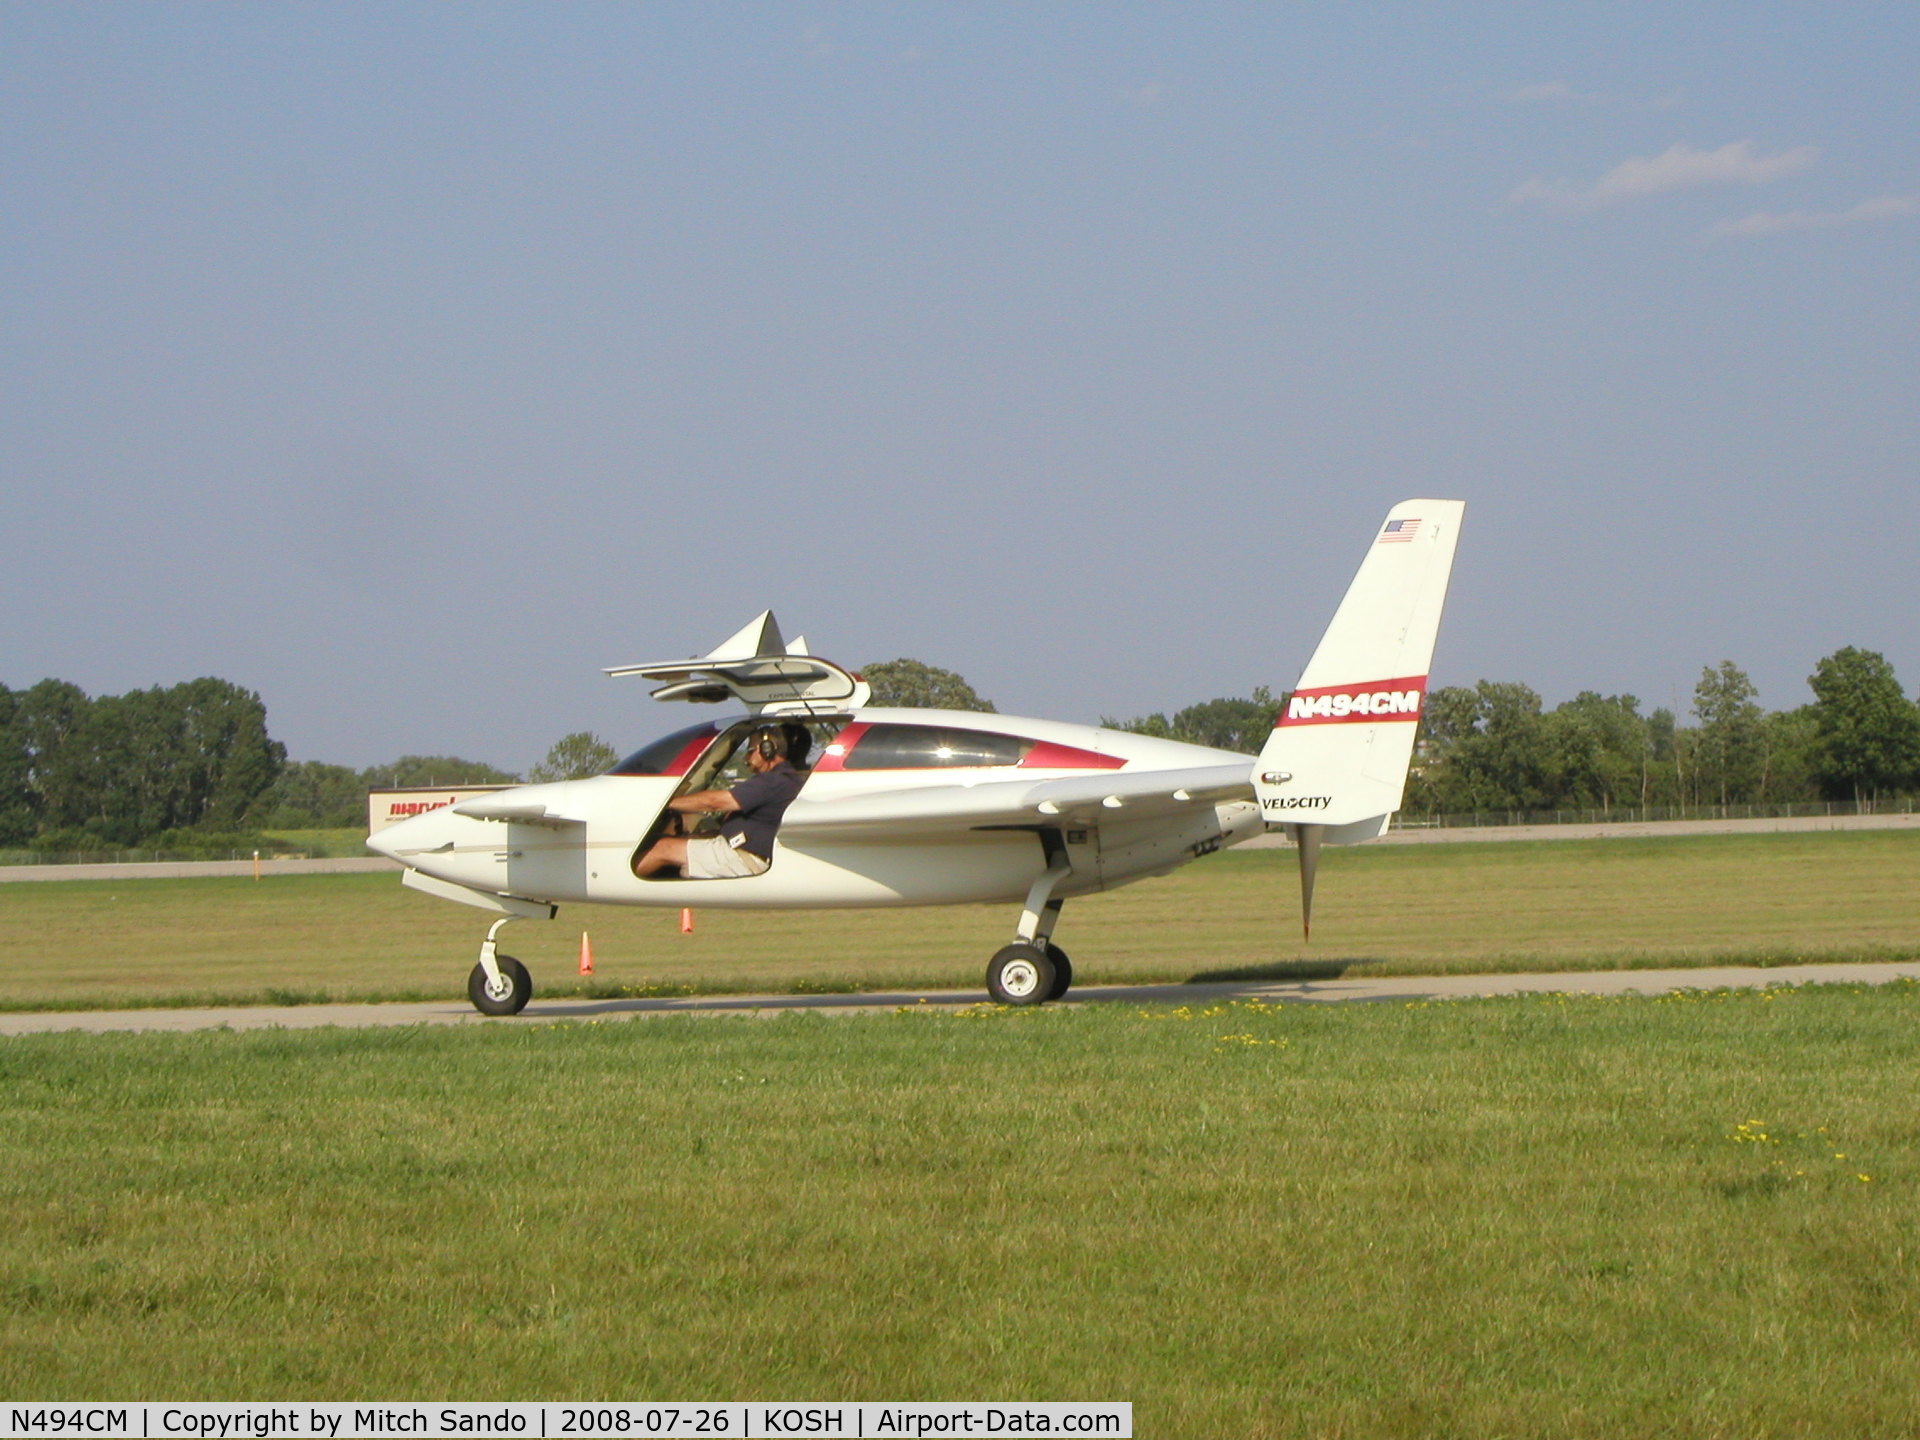 N494CM, 2000 Velocity Velocity XL RG C/N 001 (N494CM), EAA AirVenture 2008.